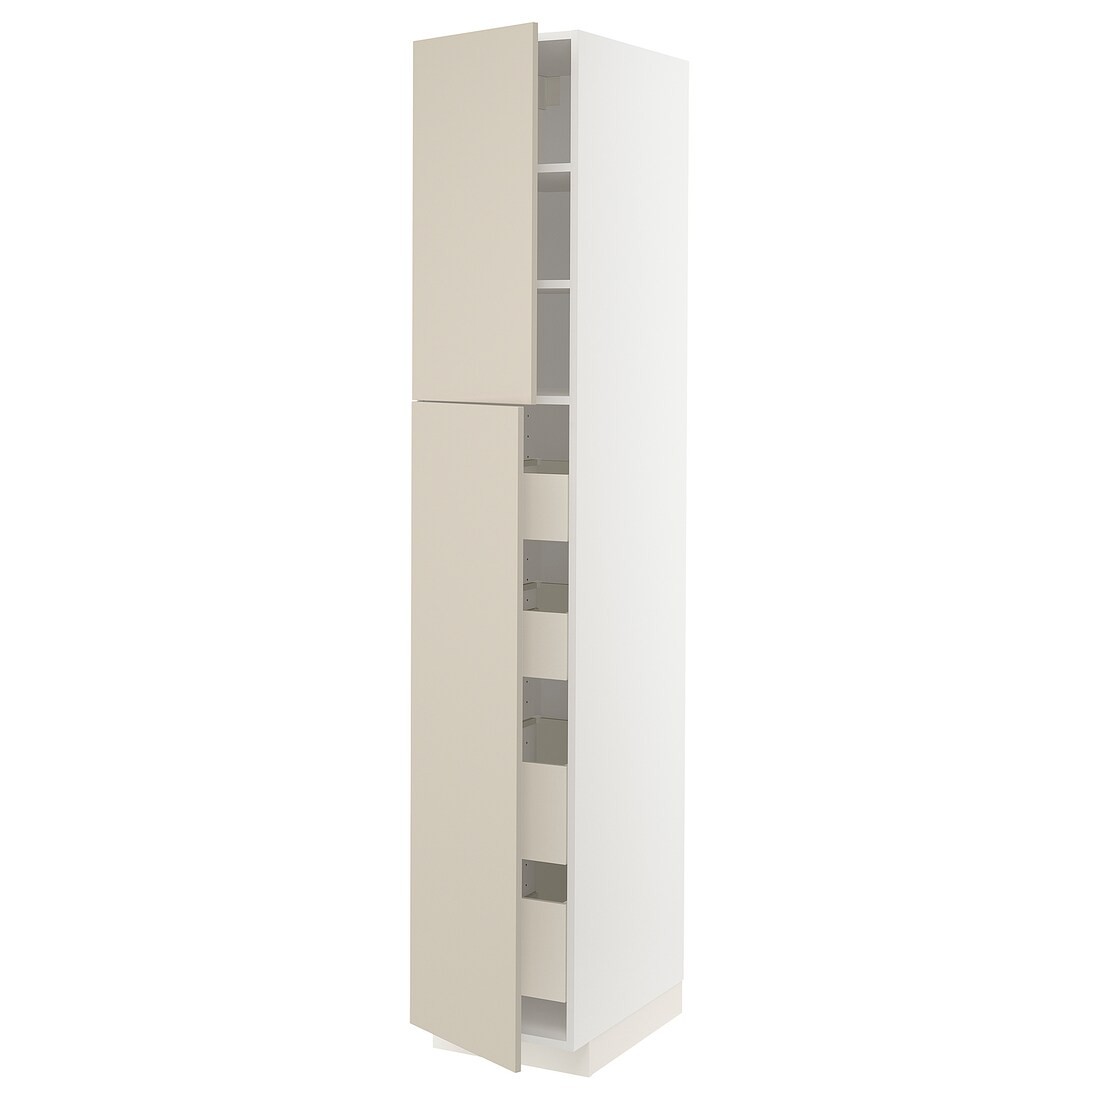 IKEA METOD МЕТОД / MAXIMERA МАКСИМЕРА Шкаф высокий 2 двери / 4 ящика, белый / Havstorp бежевый, 40x60x220 см 09460846 | 094.608.46